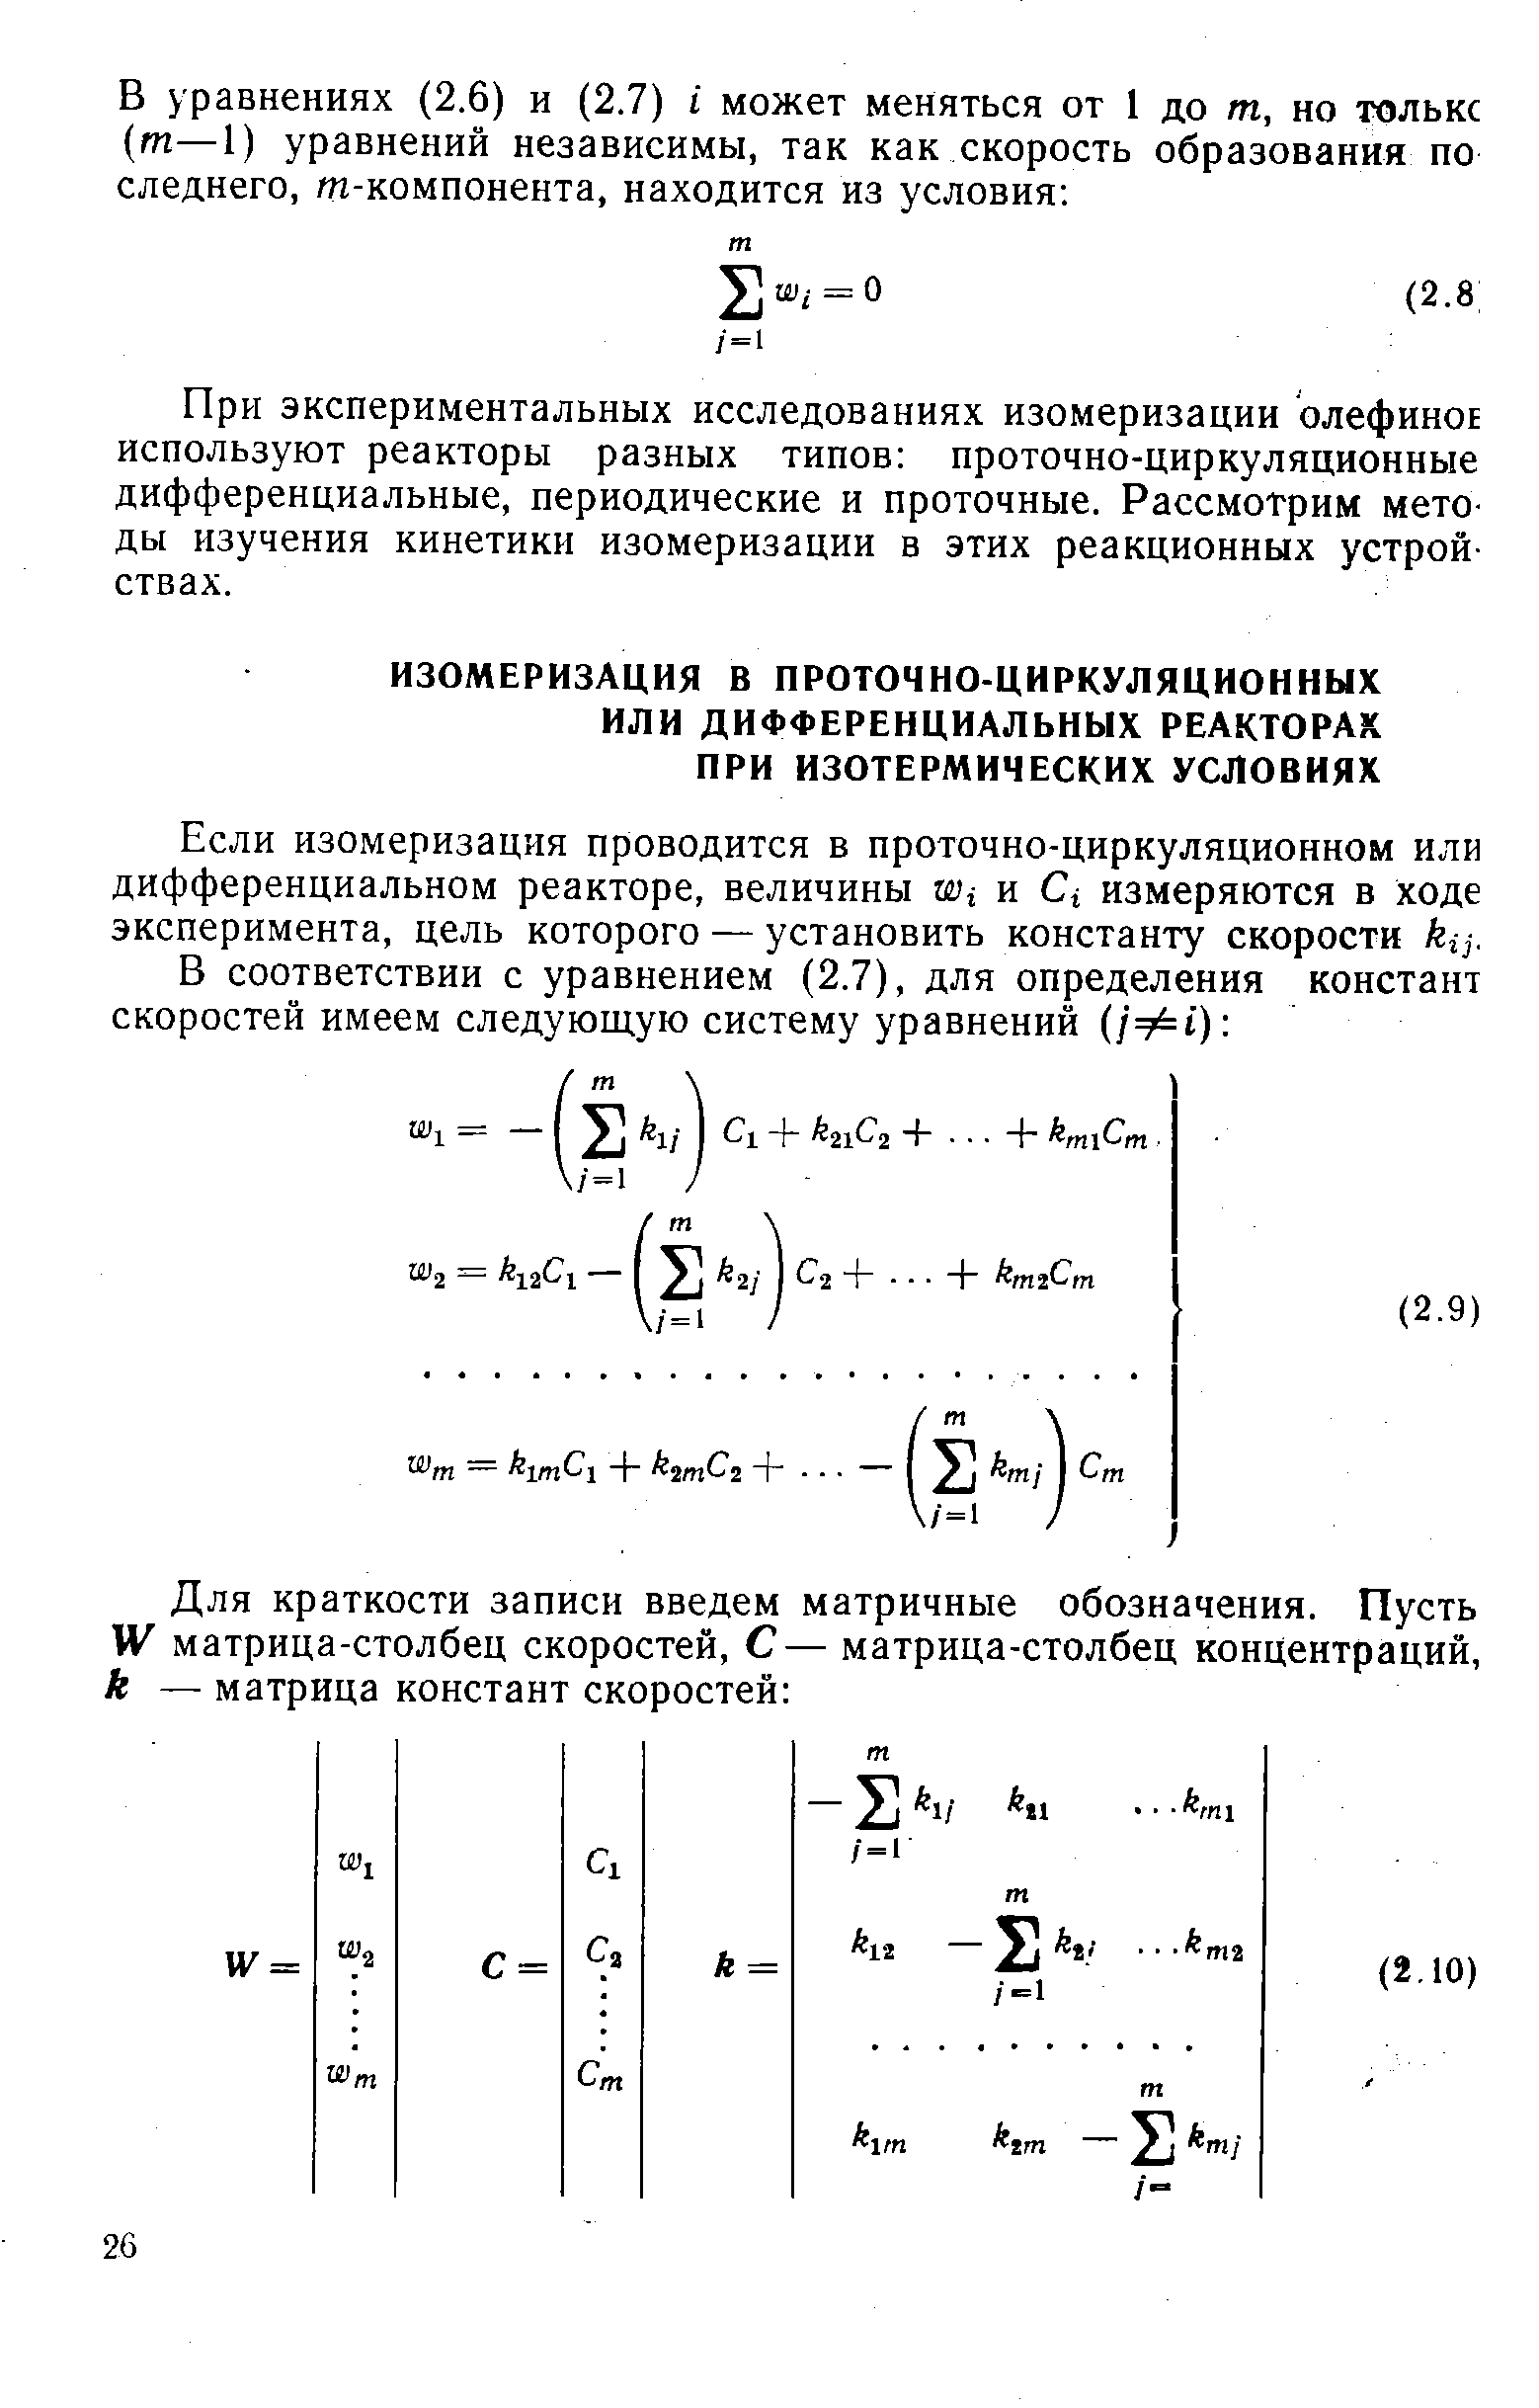 Если изомеризация проводится в проточно-циркуляционном или дифференциальном реакторе, величины м), и Сг измеряются в ходе эксперимента, цель которого — установить константу скорости кц.